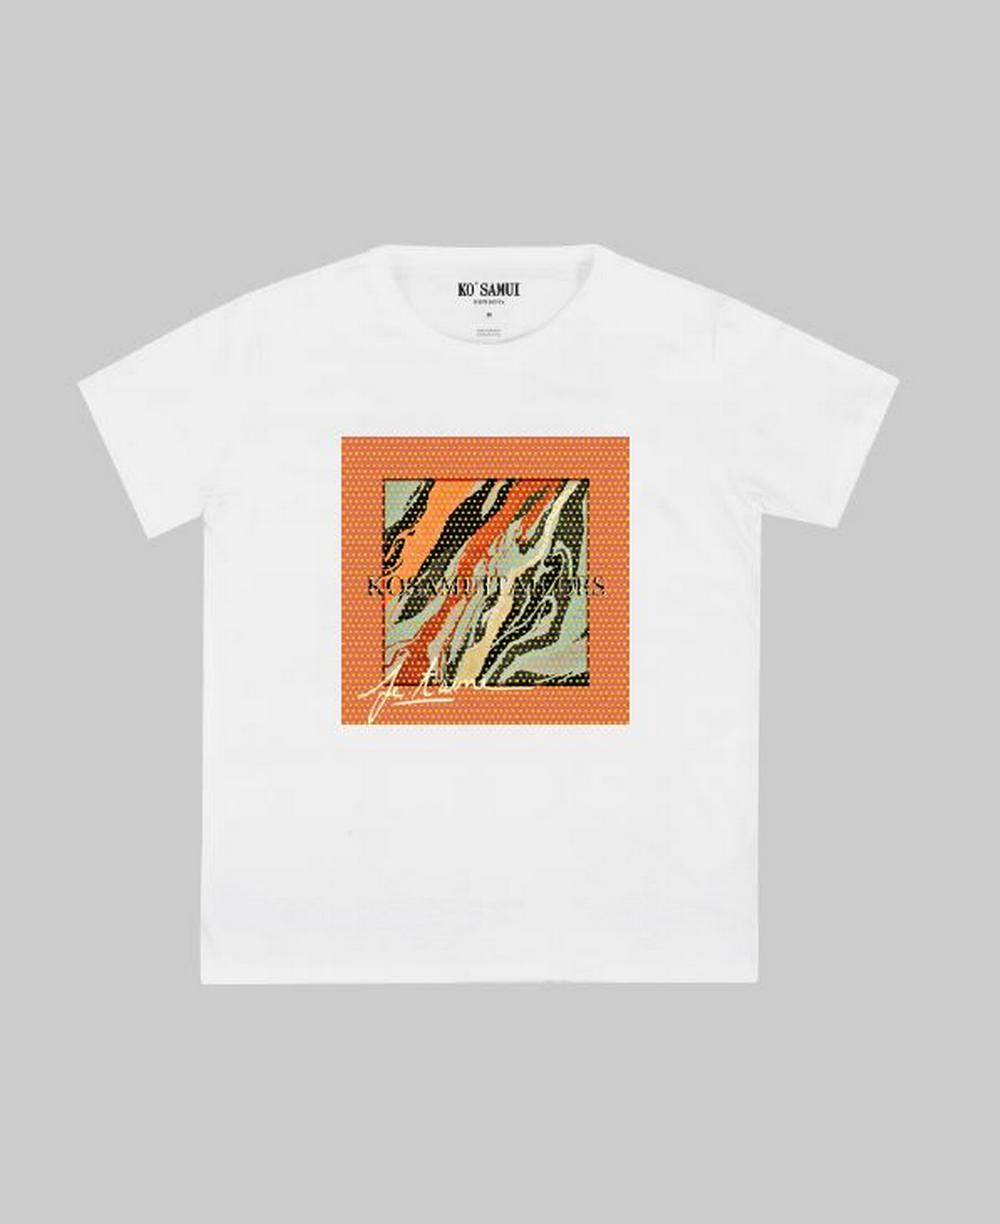 Ko Samui - T-shirt stampa brillantini bianco/arancione - FTAG145 ZEBRA